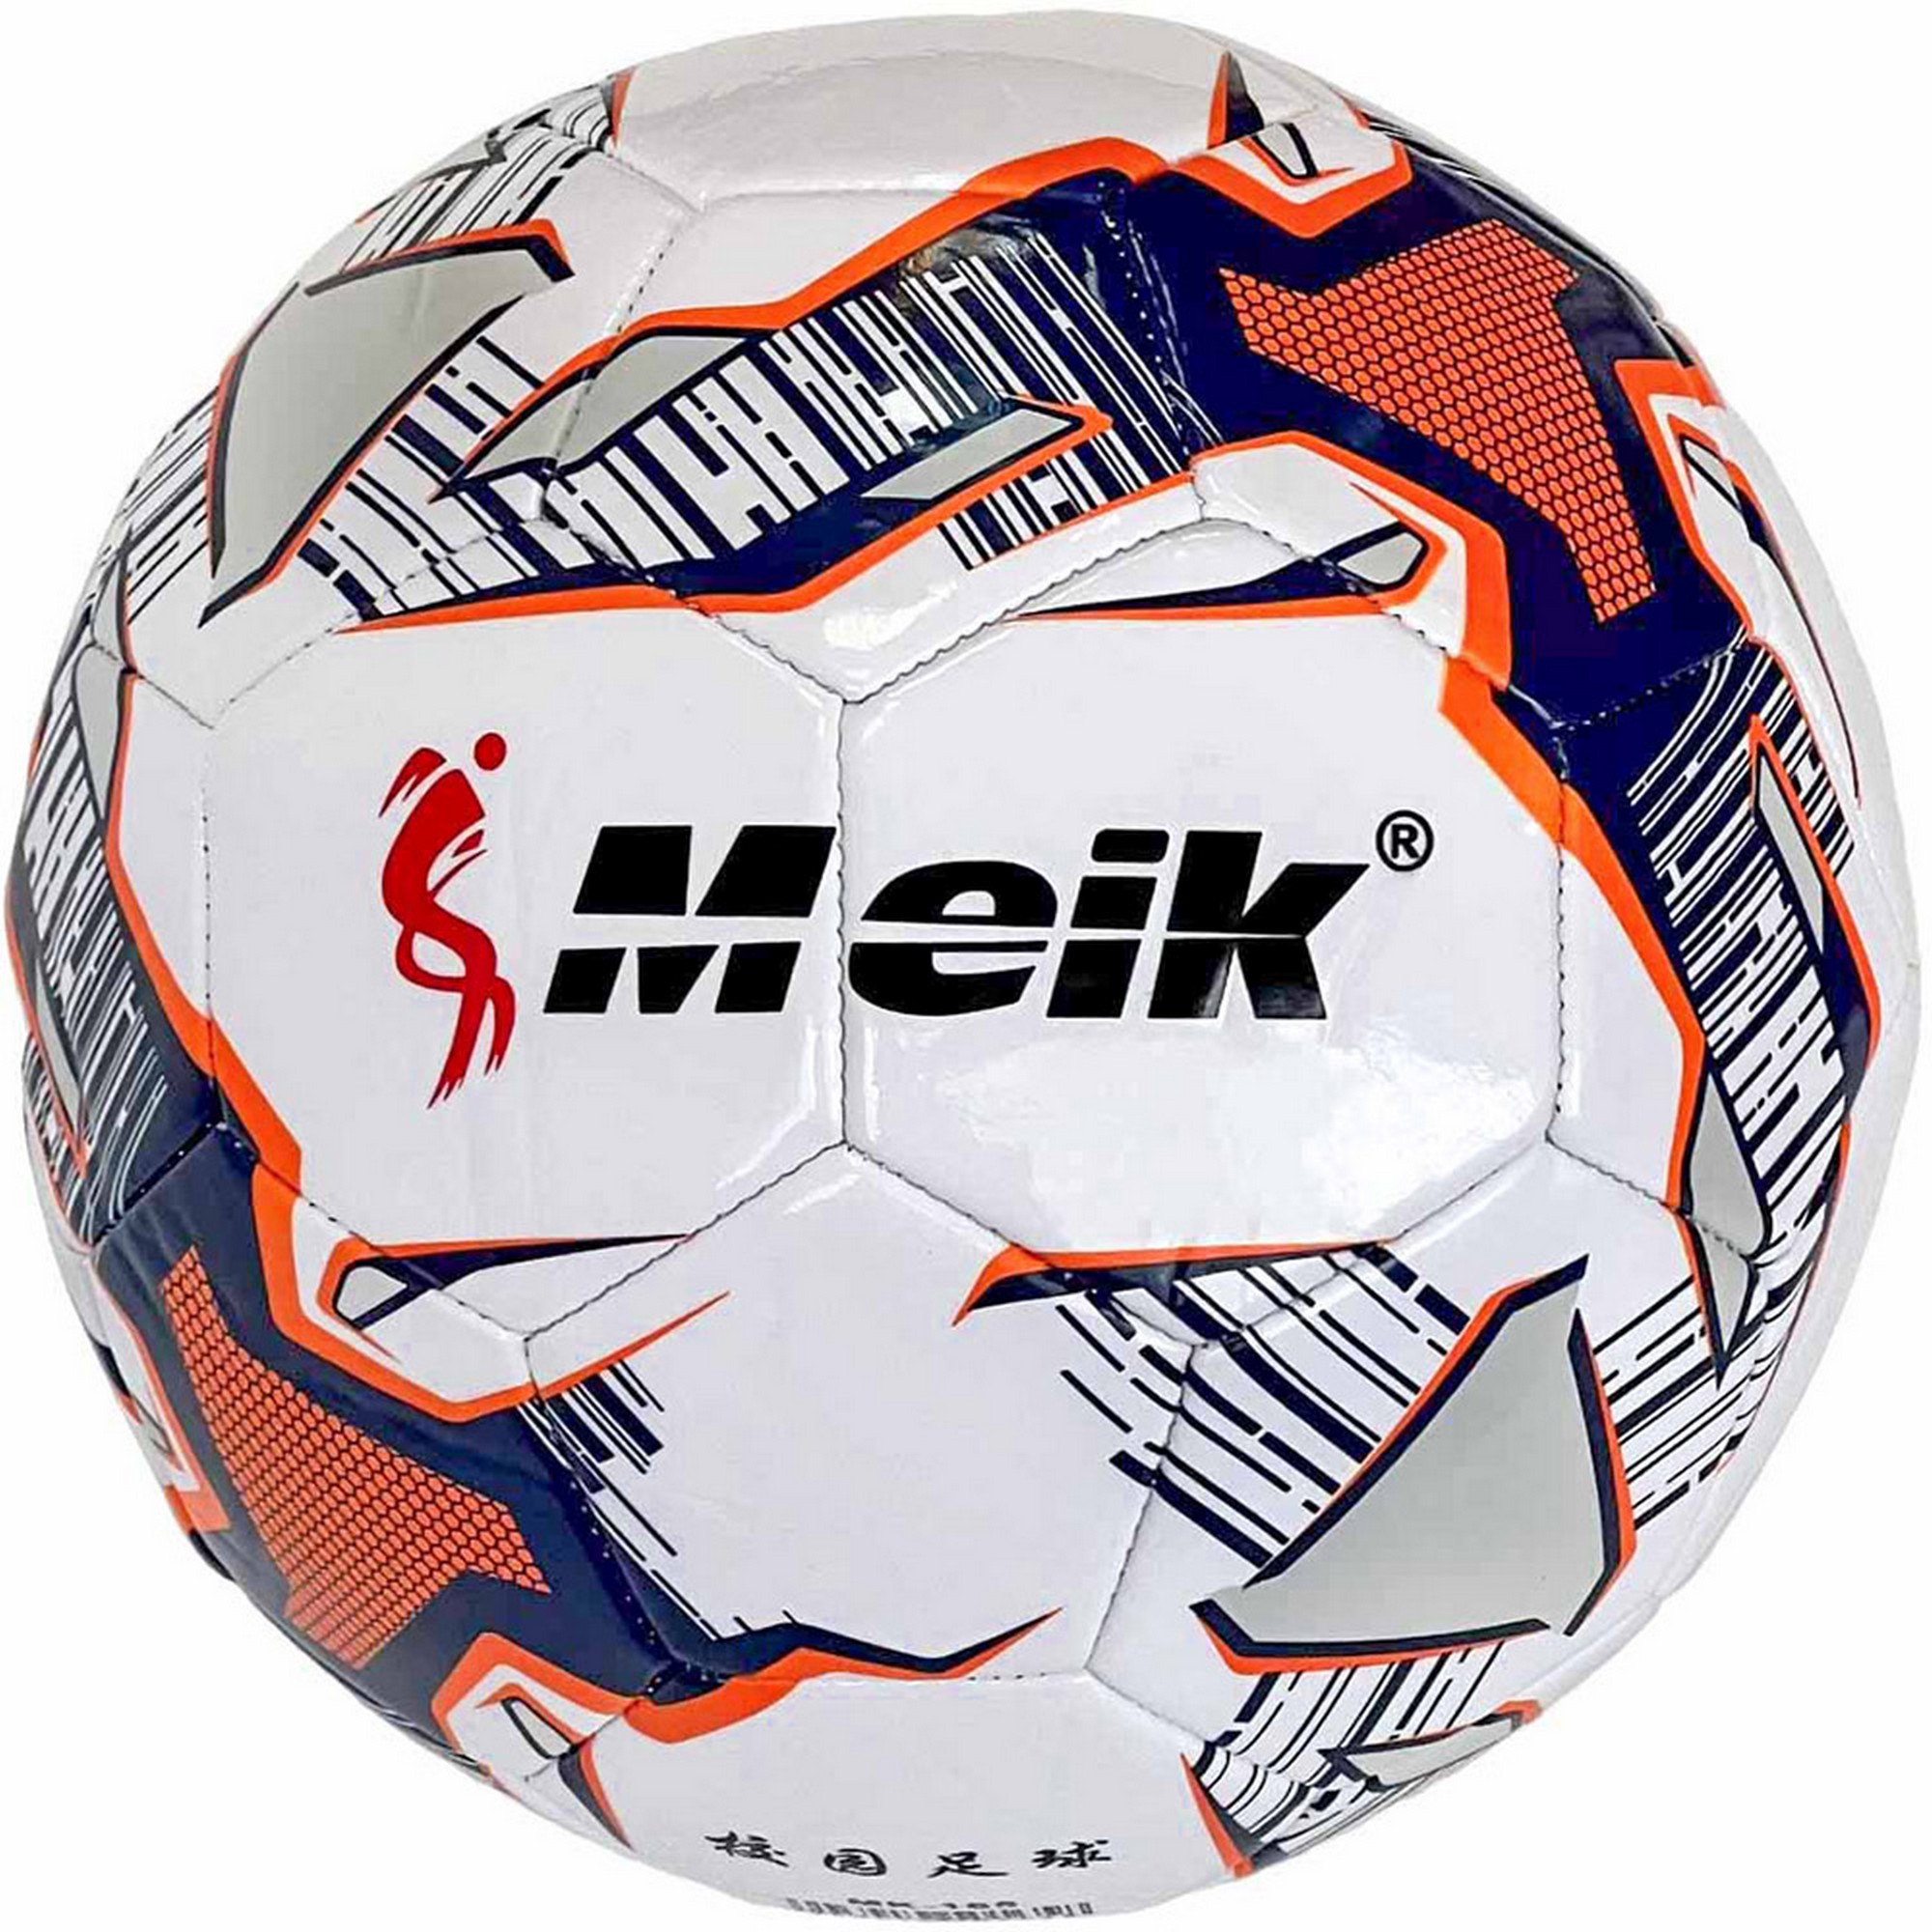   Meik E40795-1 .5